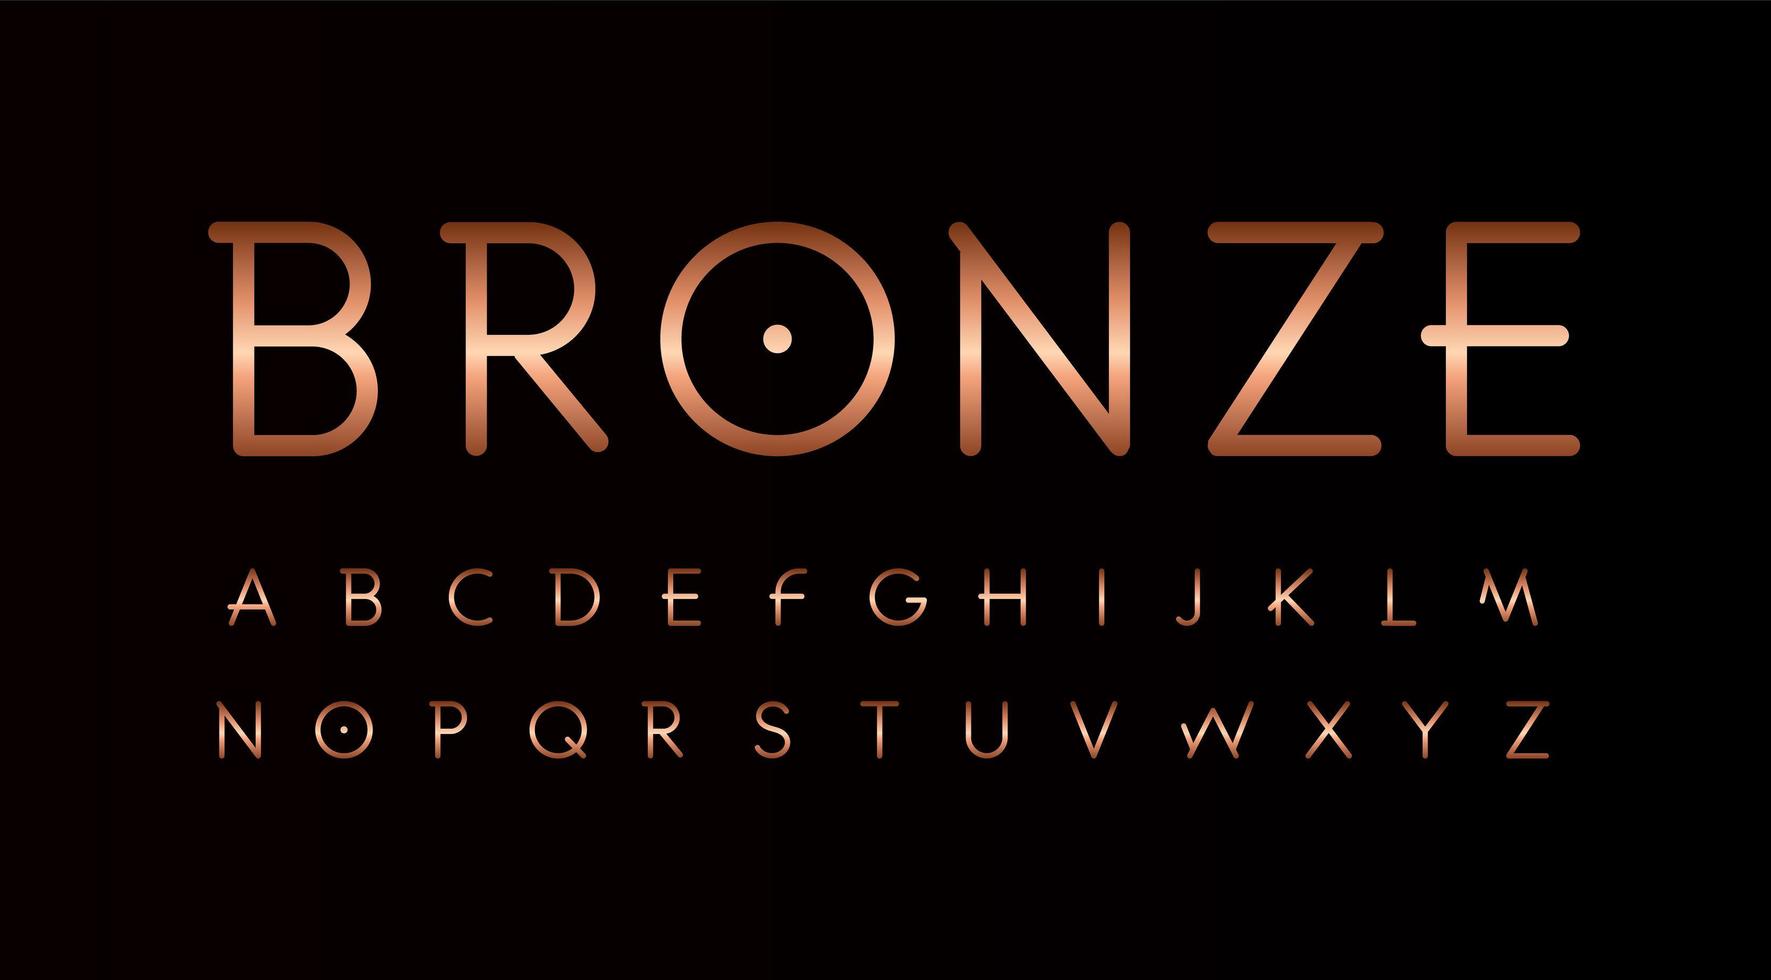 bronzen brieven instellen. dunne lijnen ongebruikelijke stijl vector Latijns alfabet. lettertype voor evenementen, promoties, logo's, banner, monogram en poster. typografie ontwerp.